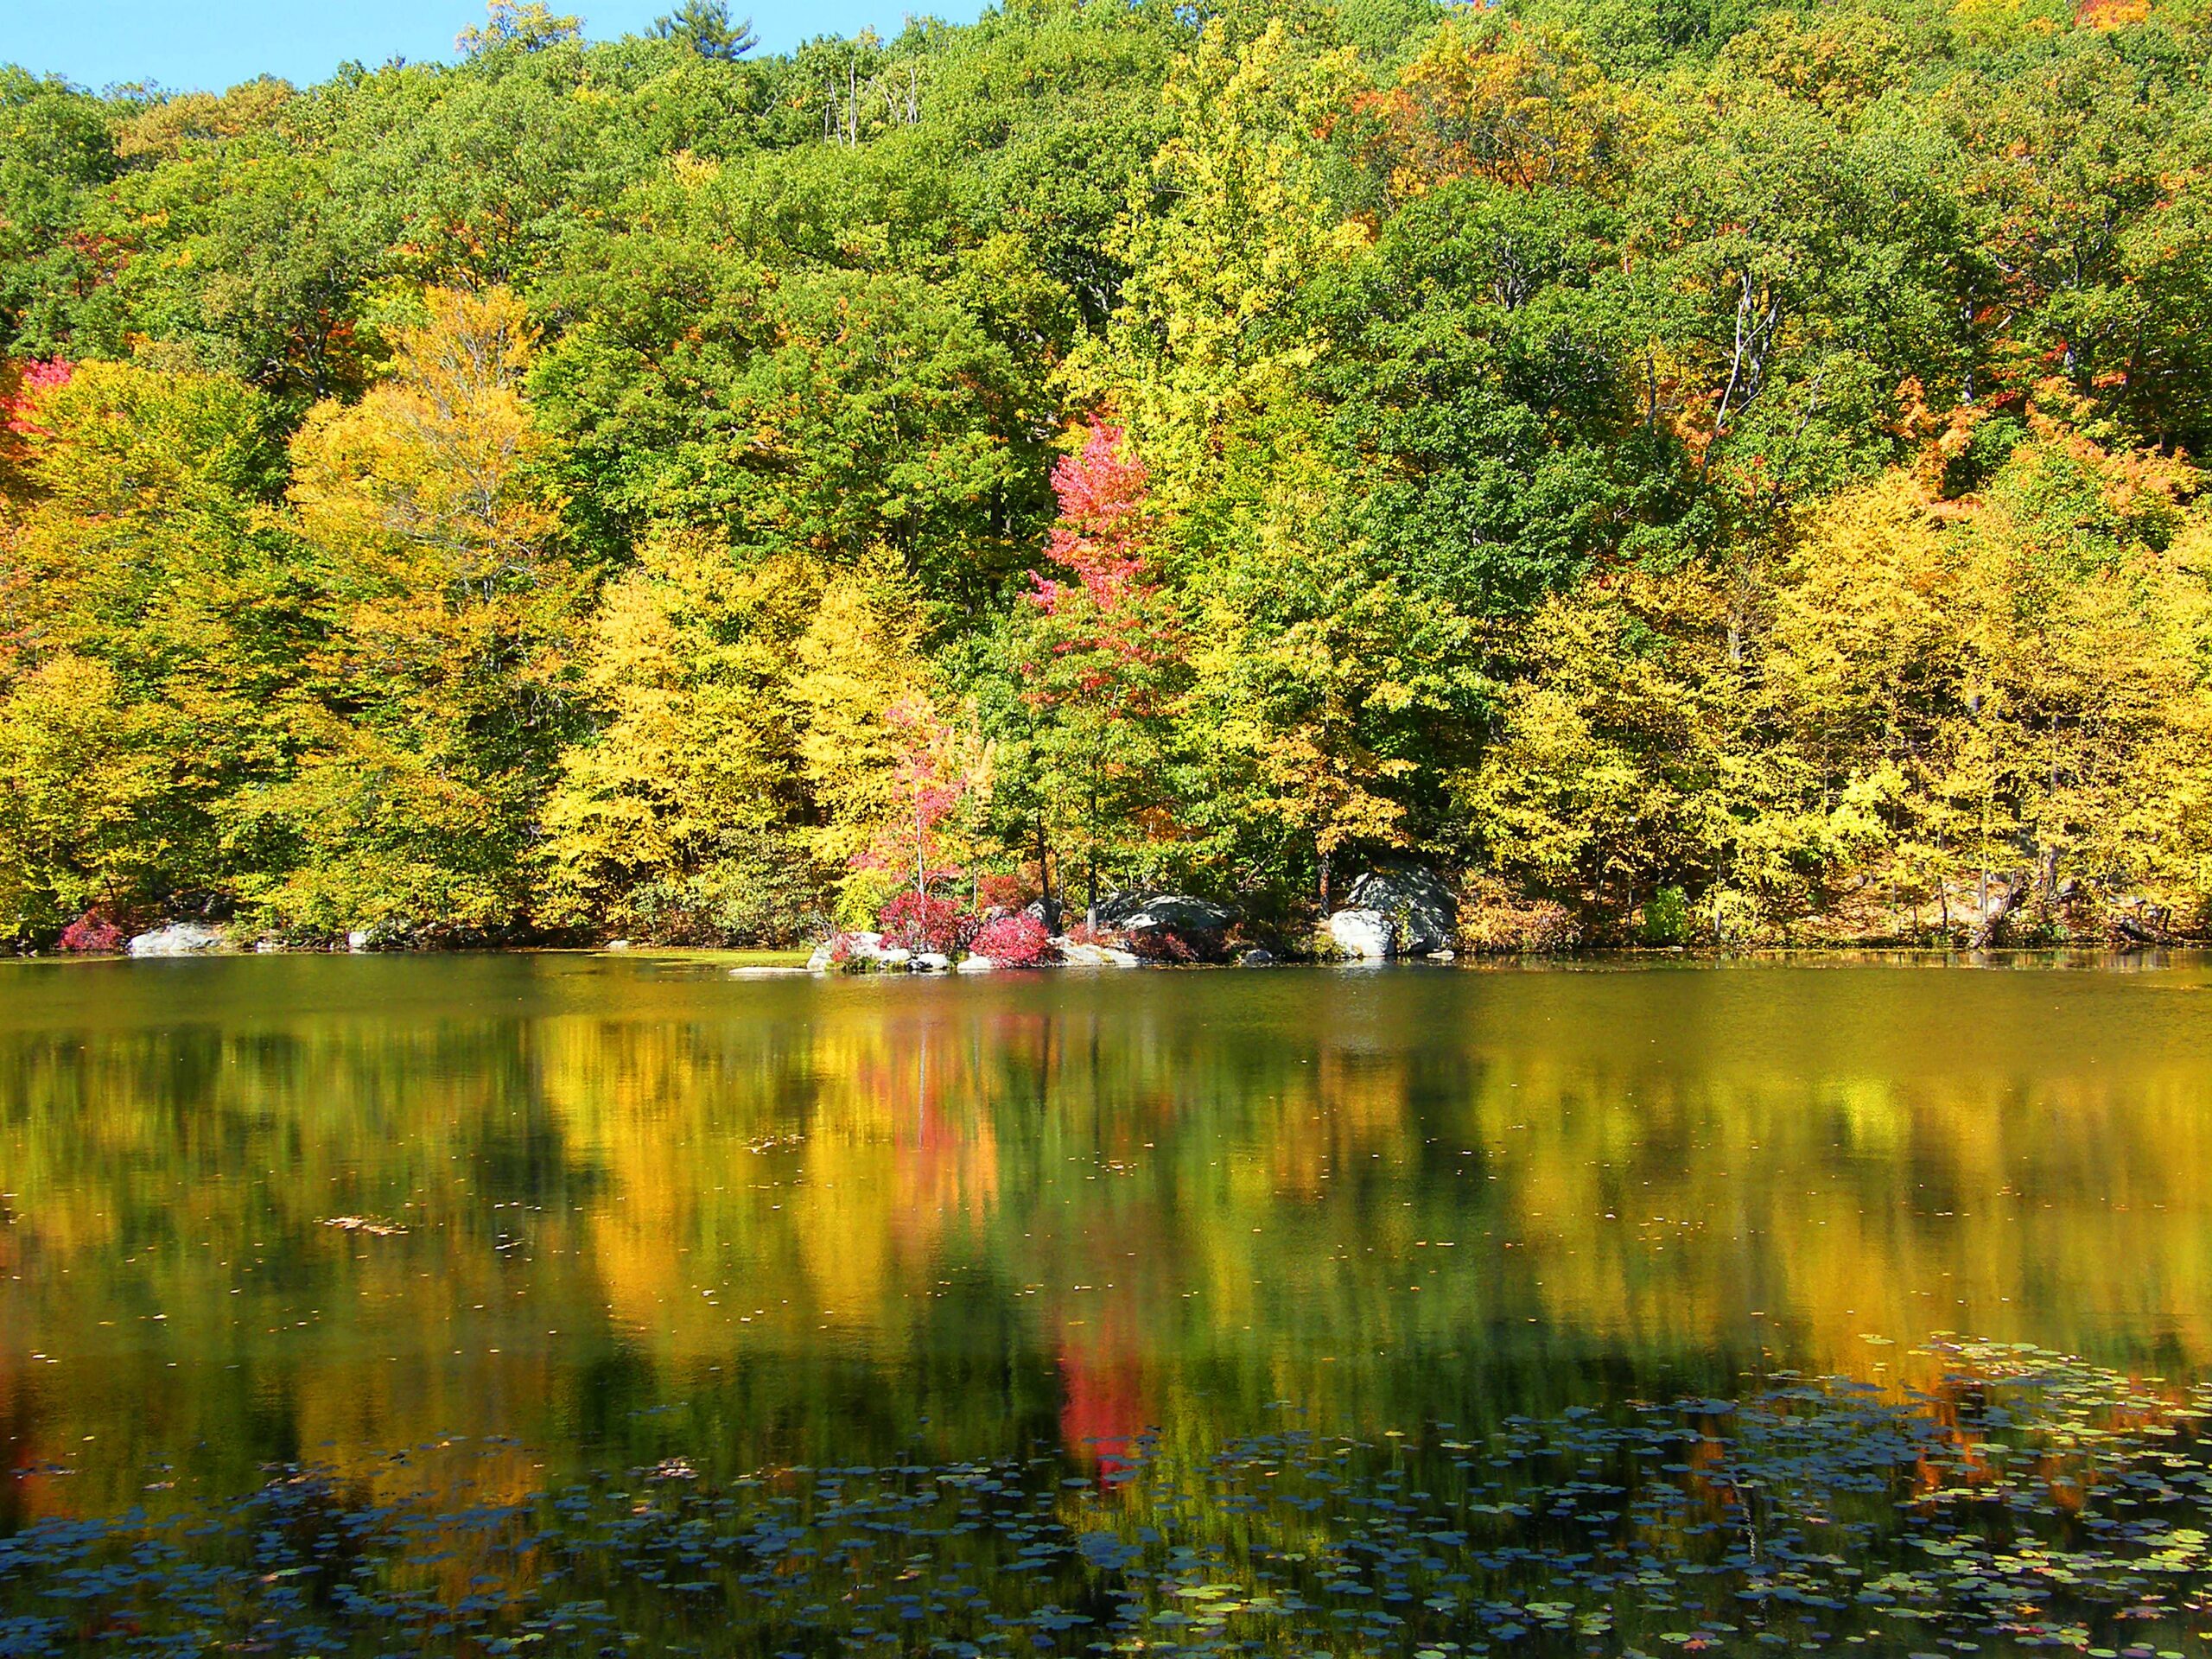 Early autumn trees along a lake